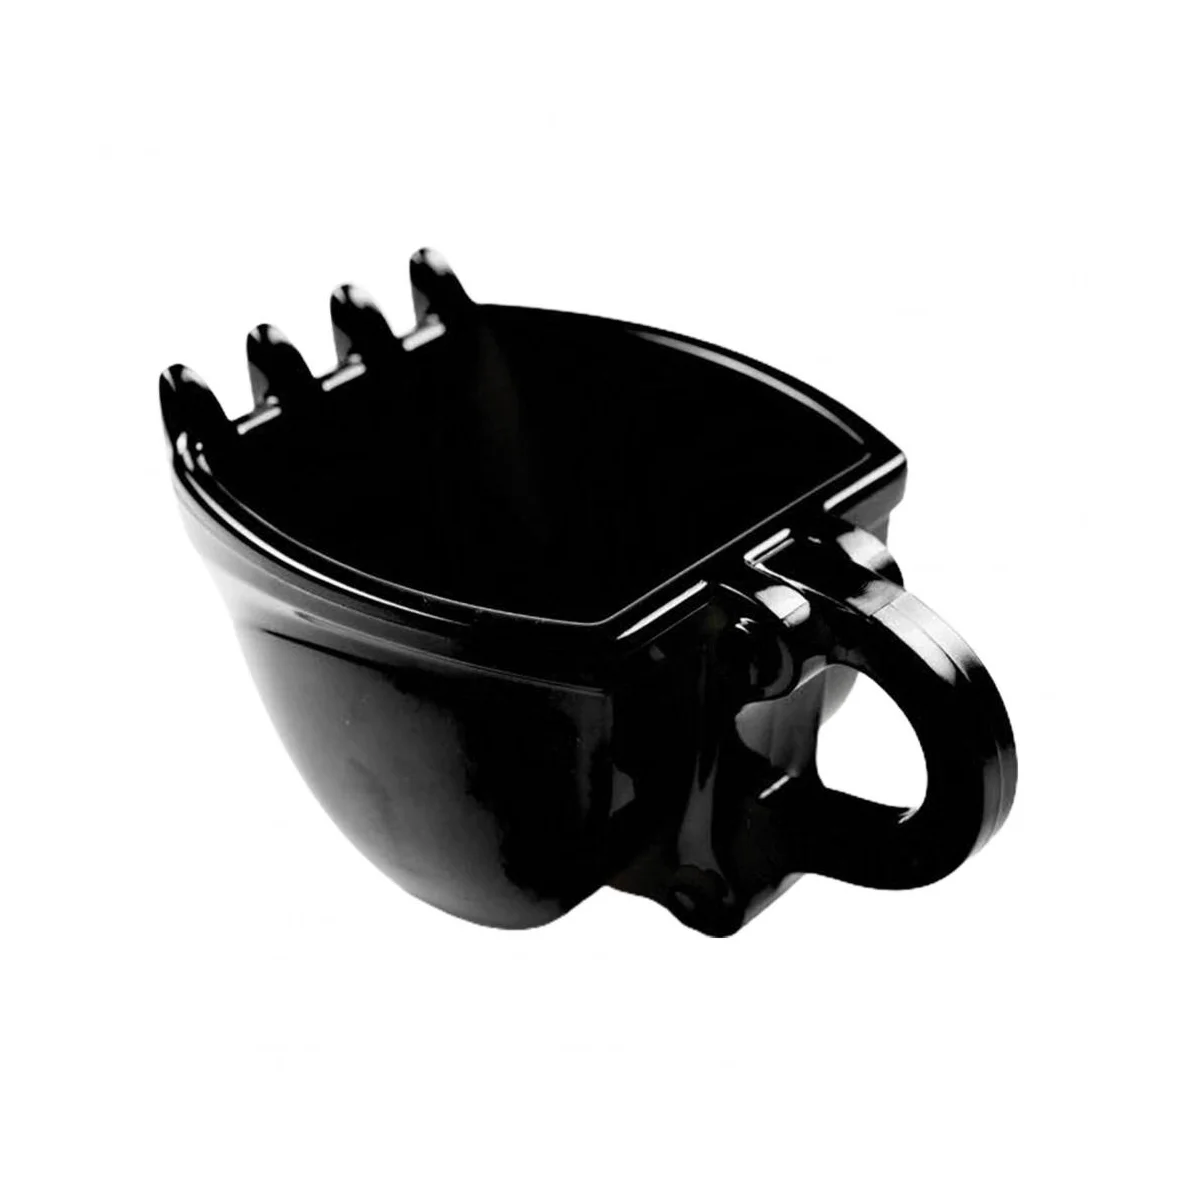 1шт Креативный Ковш Экскаватора Объемом 330 МЛ, Чашка для плесени, Кофейная Кружка, Ведро для питья воды, Чашка Для чая, Кухонная посуда для питья, Черный